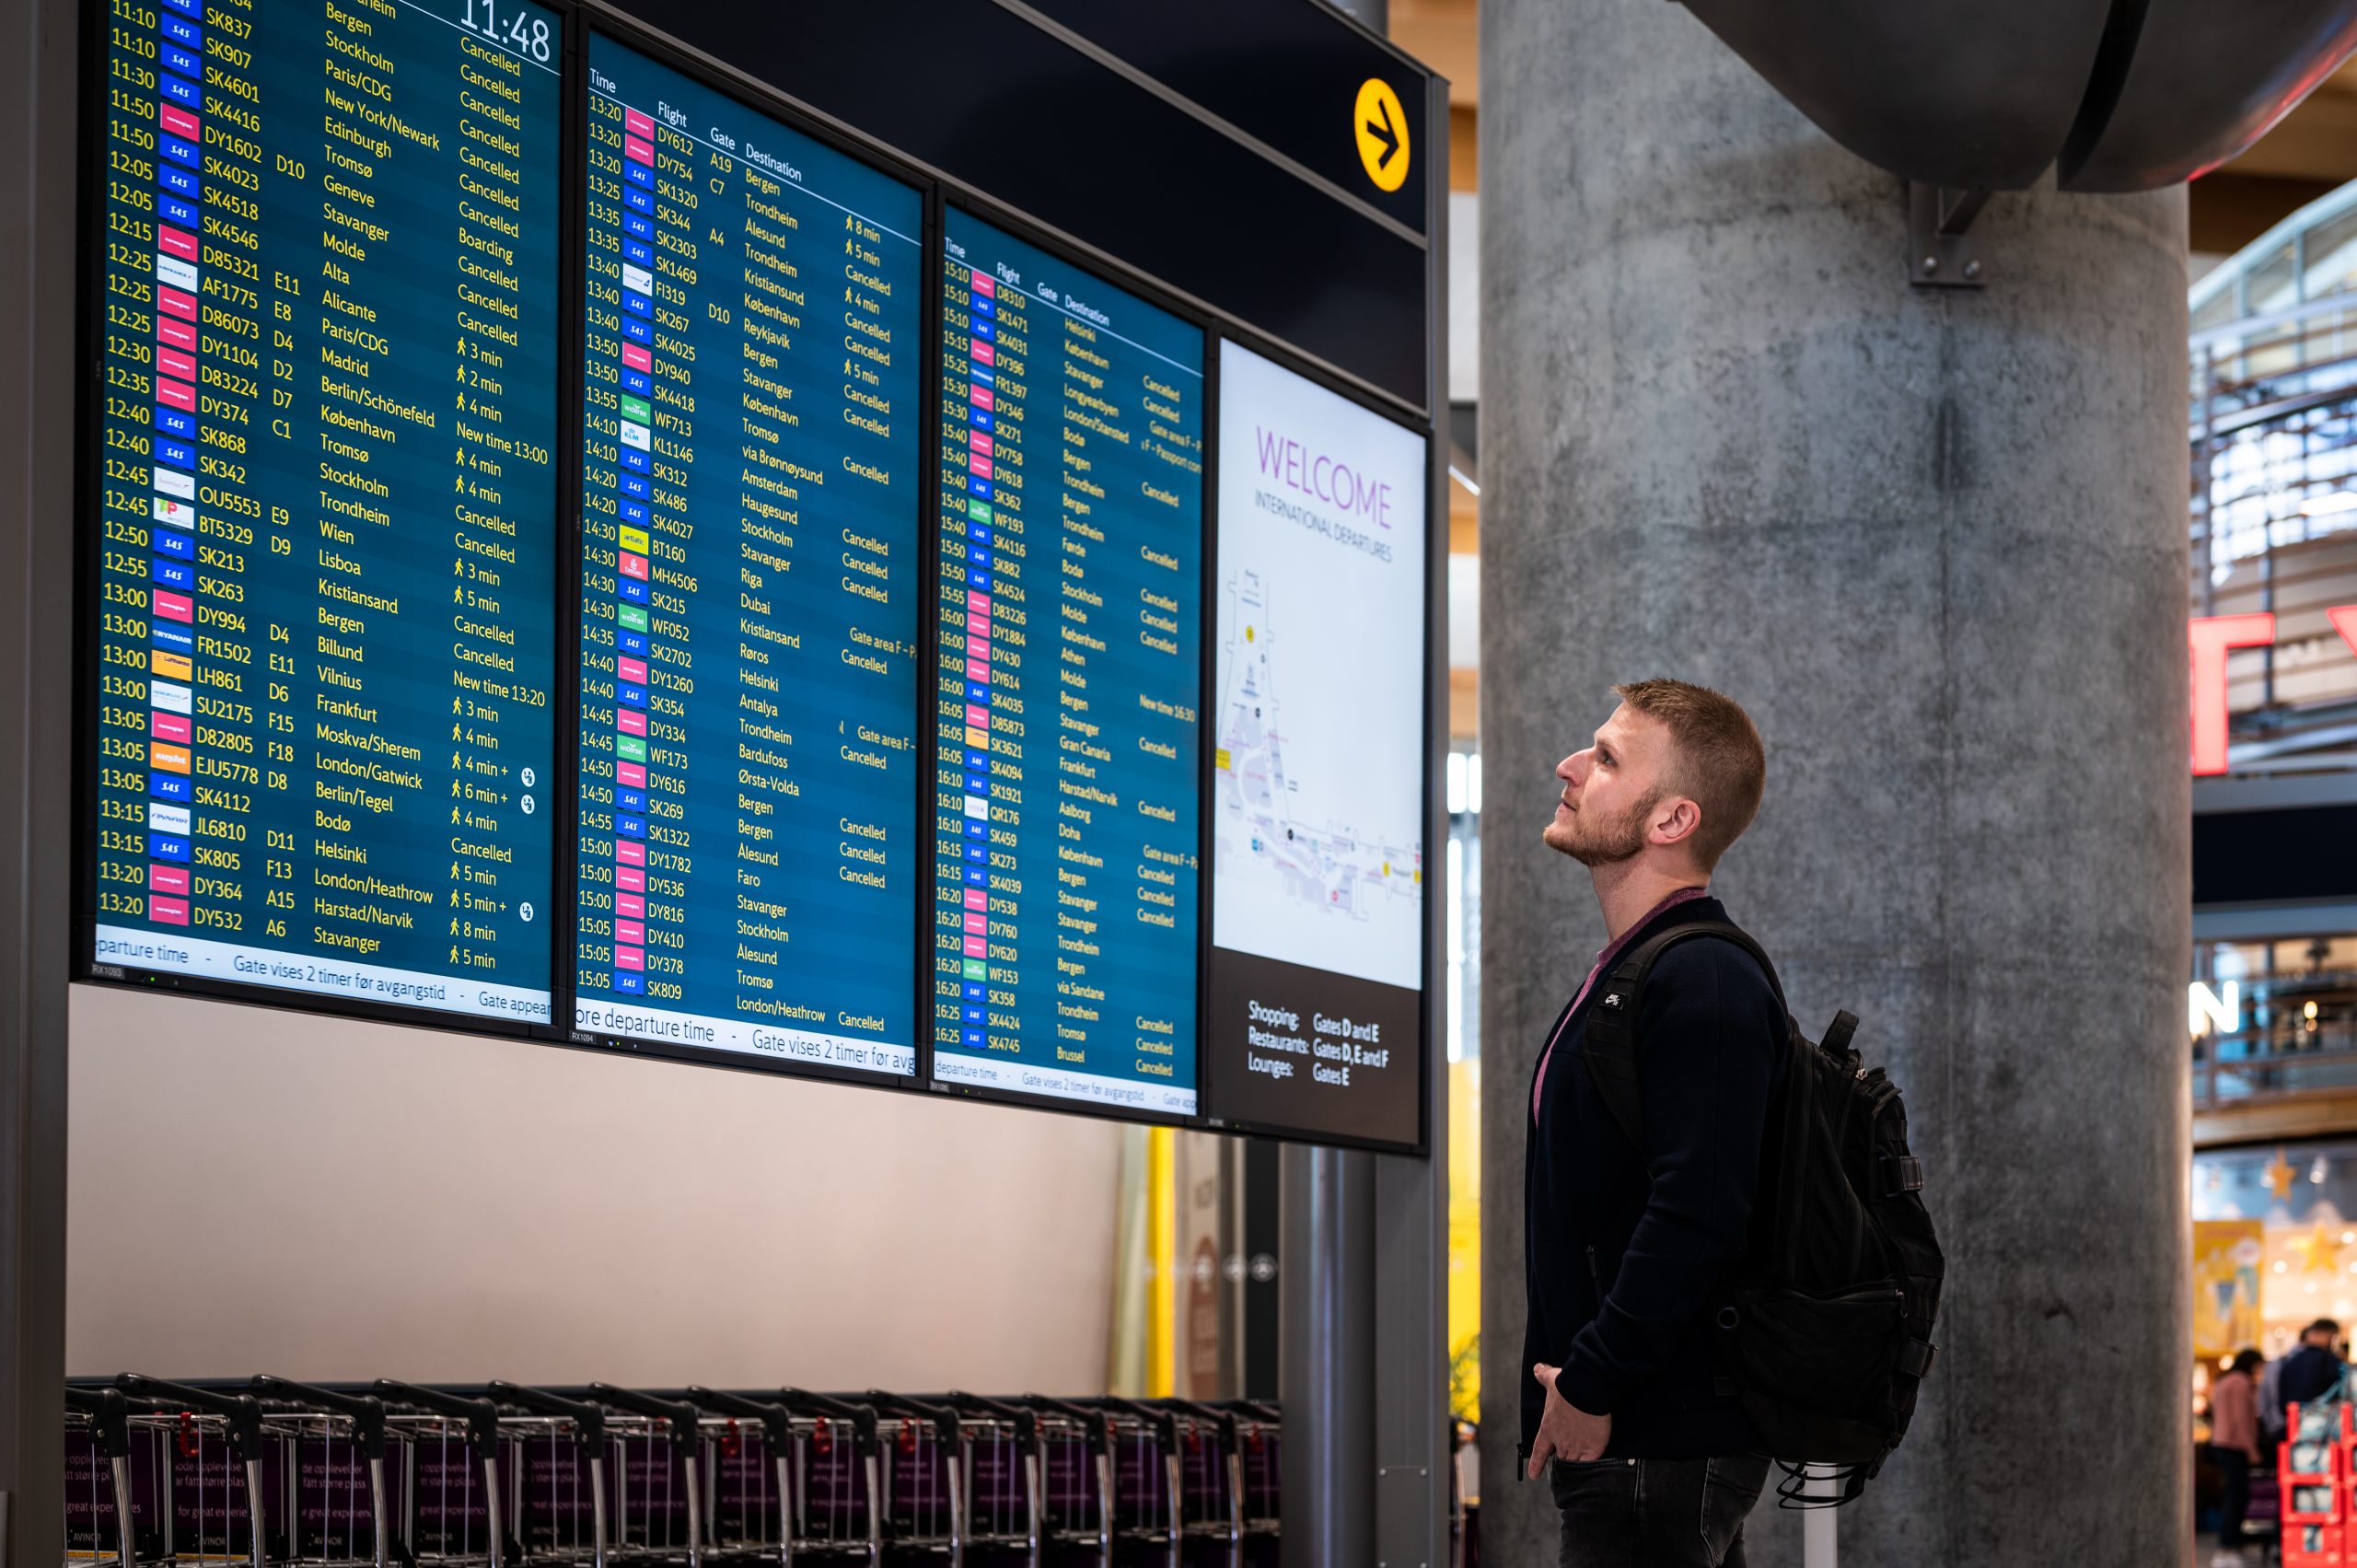 Bilde av en person som står foran en avgangstavle på flyplassen.Foto